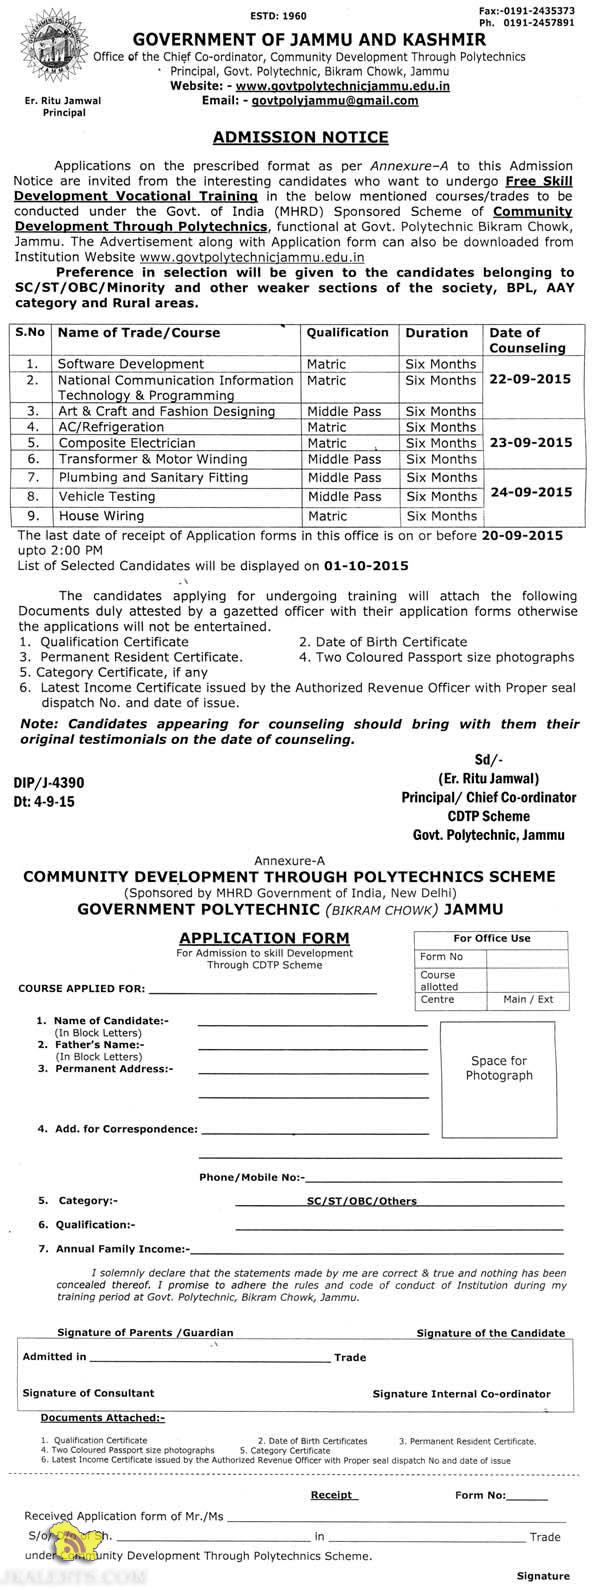 Free Skill Development Vocational Training, Govt. Polytechnic, Jammu